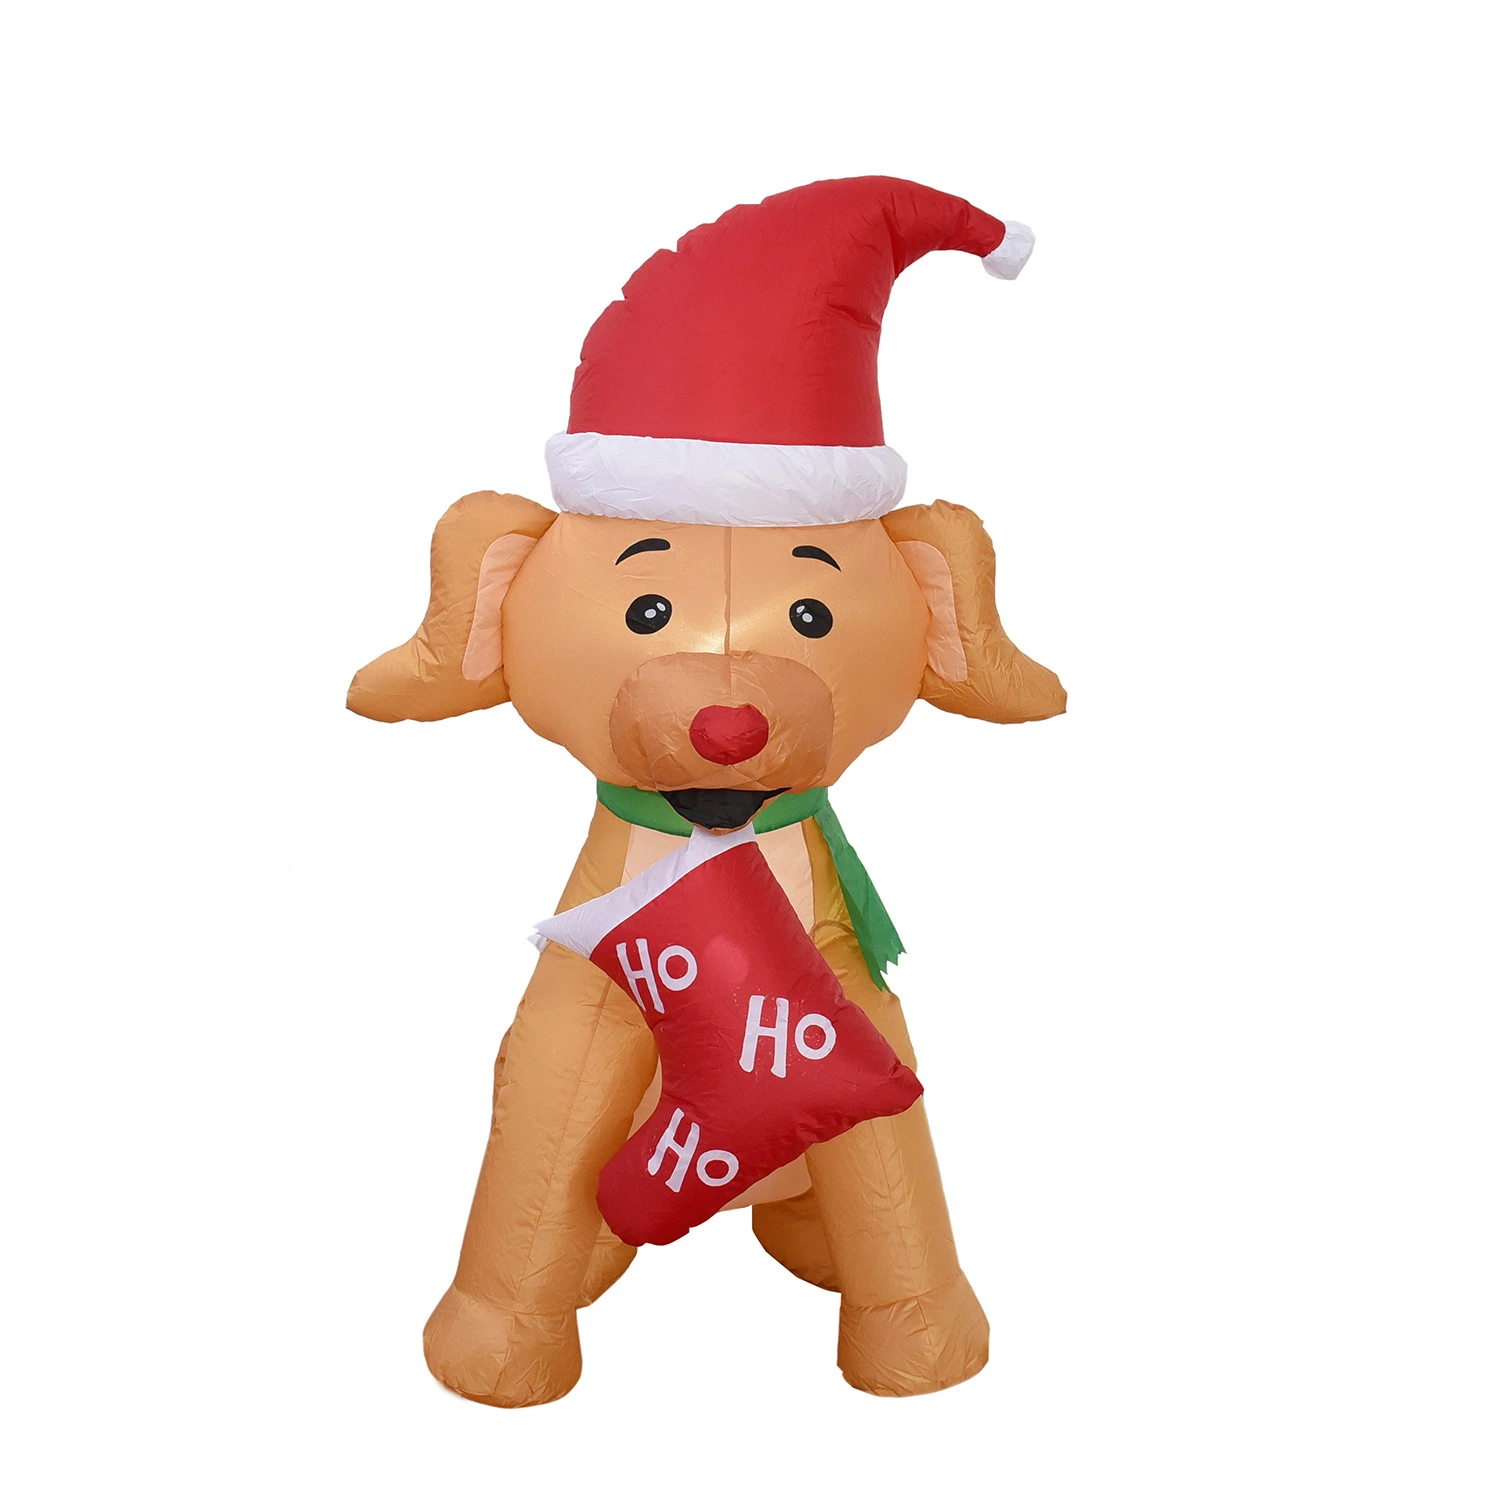 Promotion de Noël publicité modèle chien gonflable Inflatable chien pour la pendaison décoration